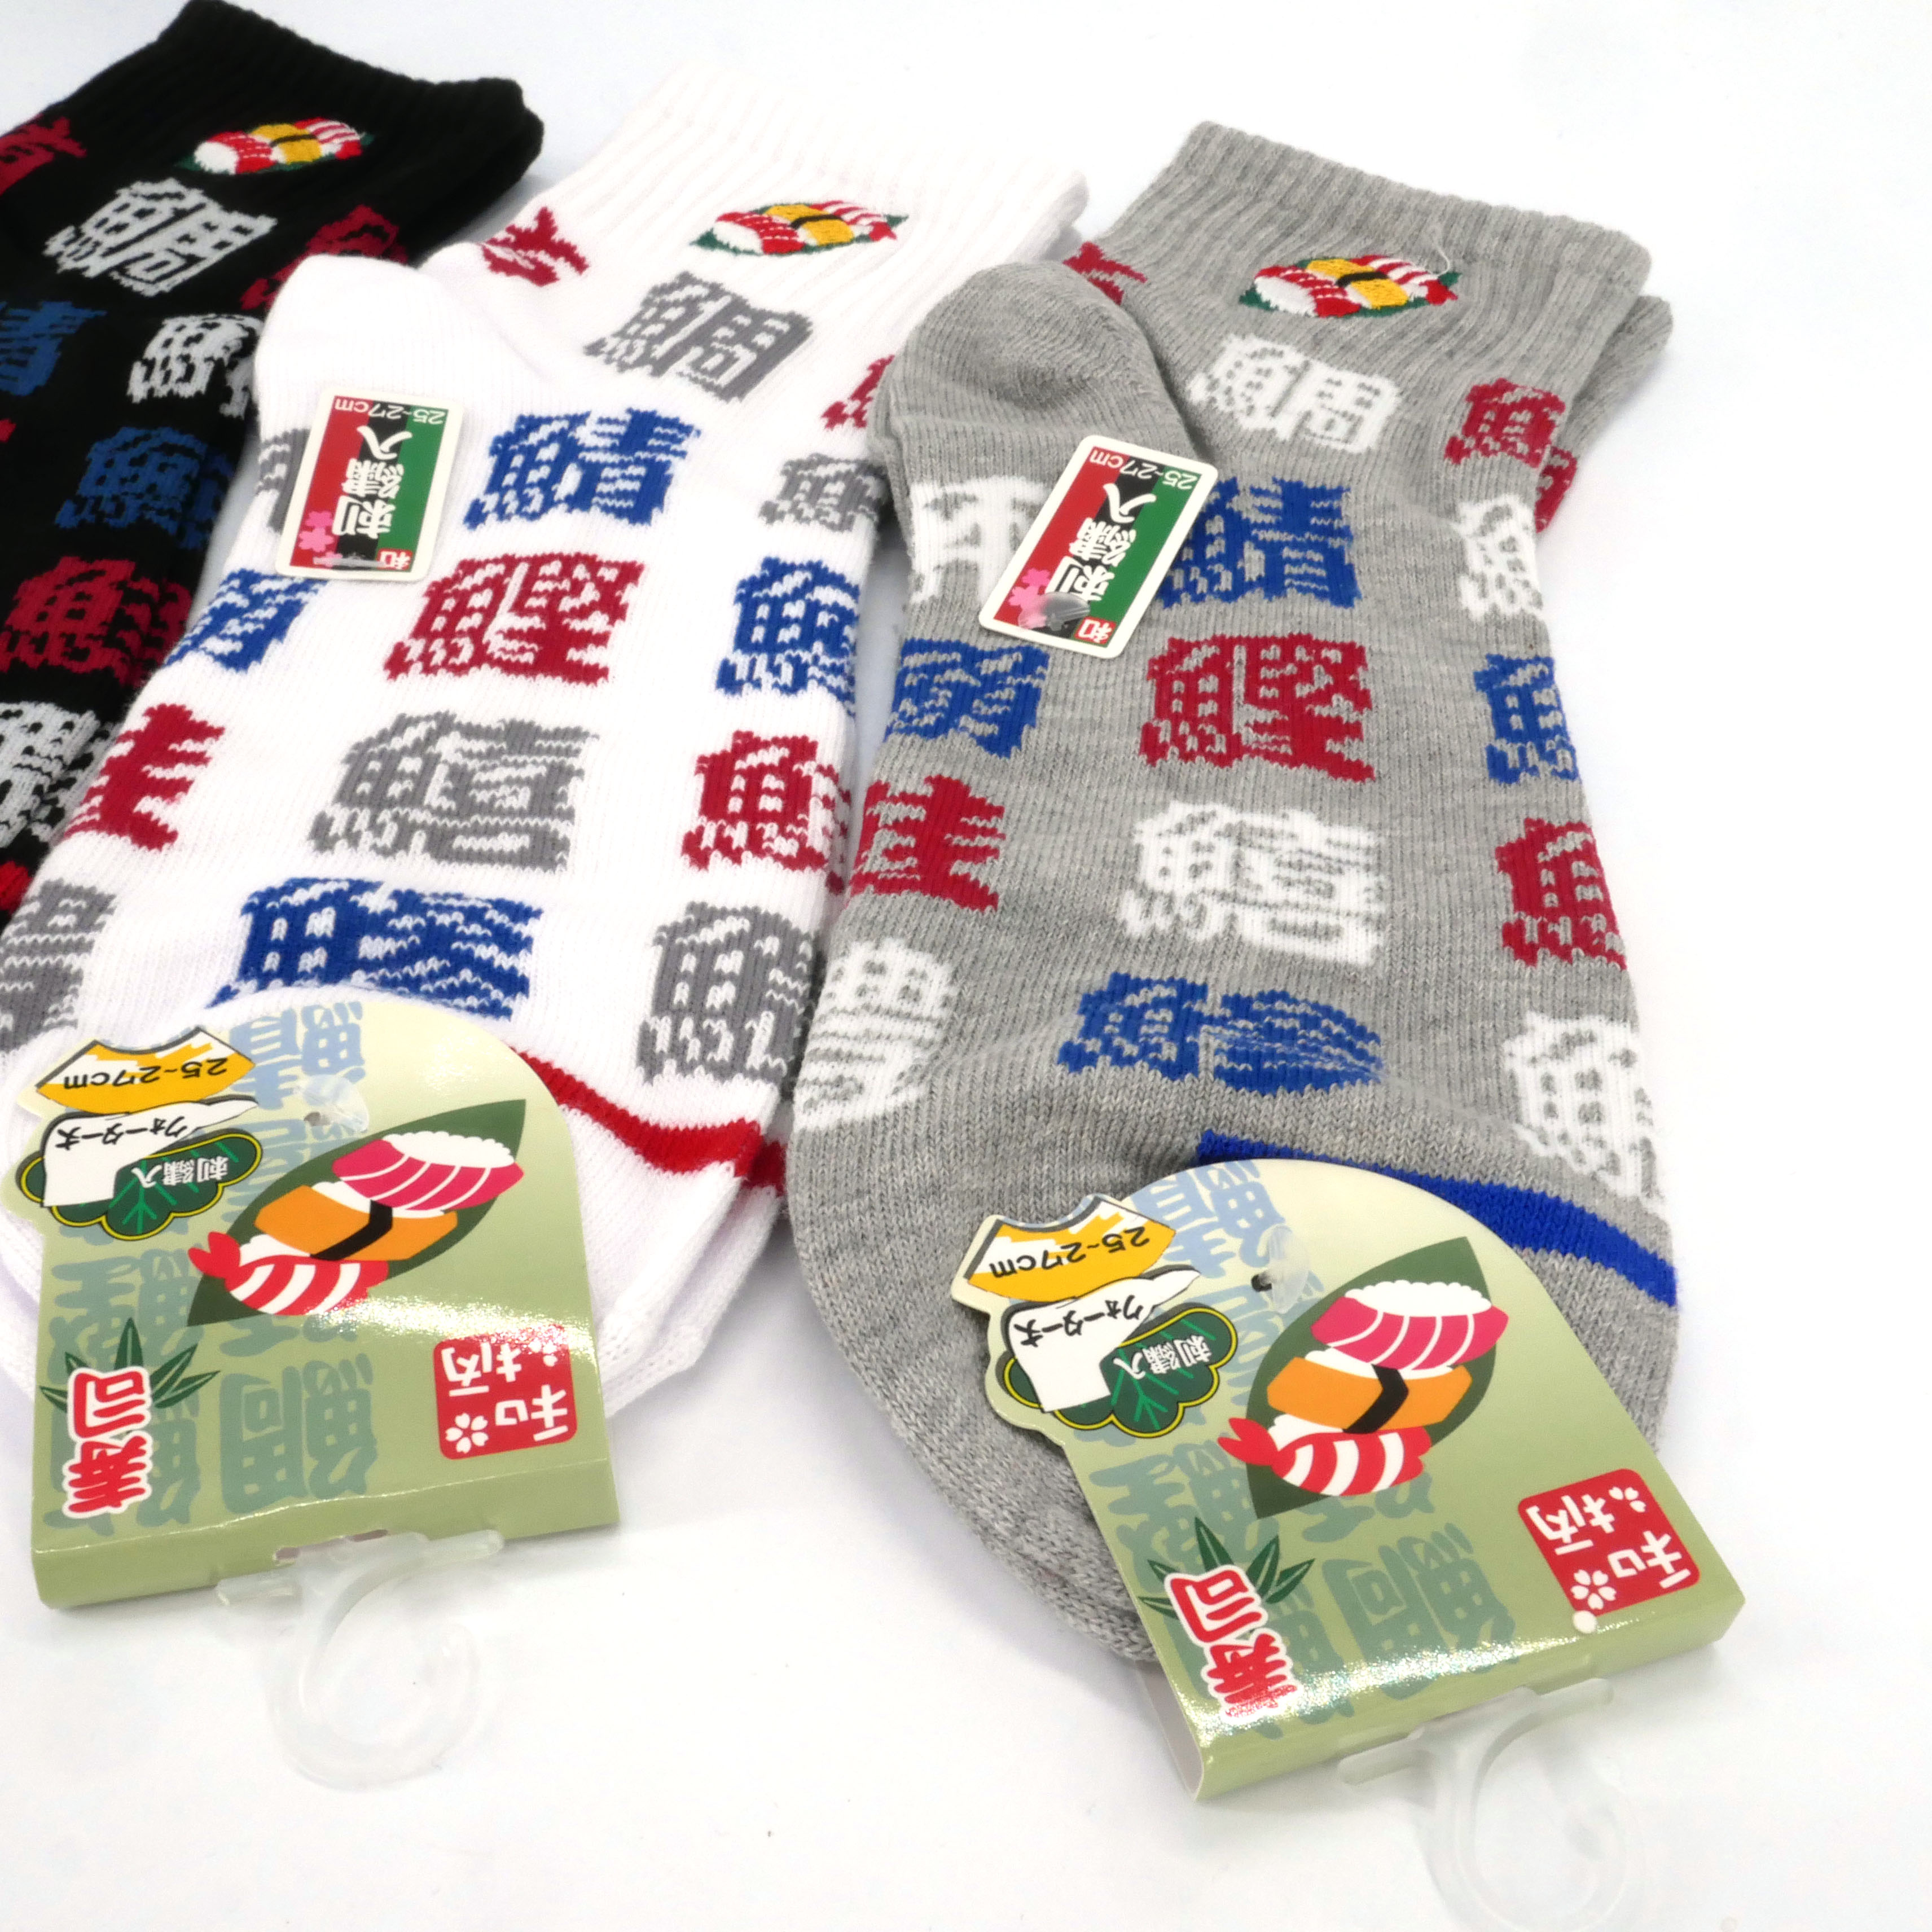 Calzini in cotone giapponese con motivo Sushi e sigla giapponese, SUSHI  NIHON SHUWA, colore a scelta